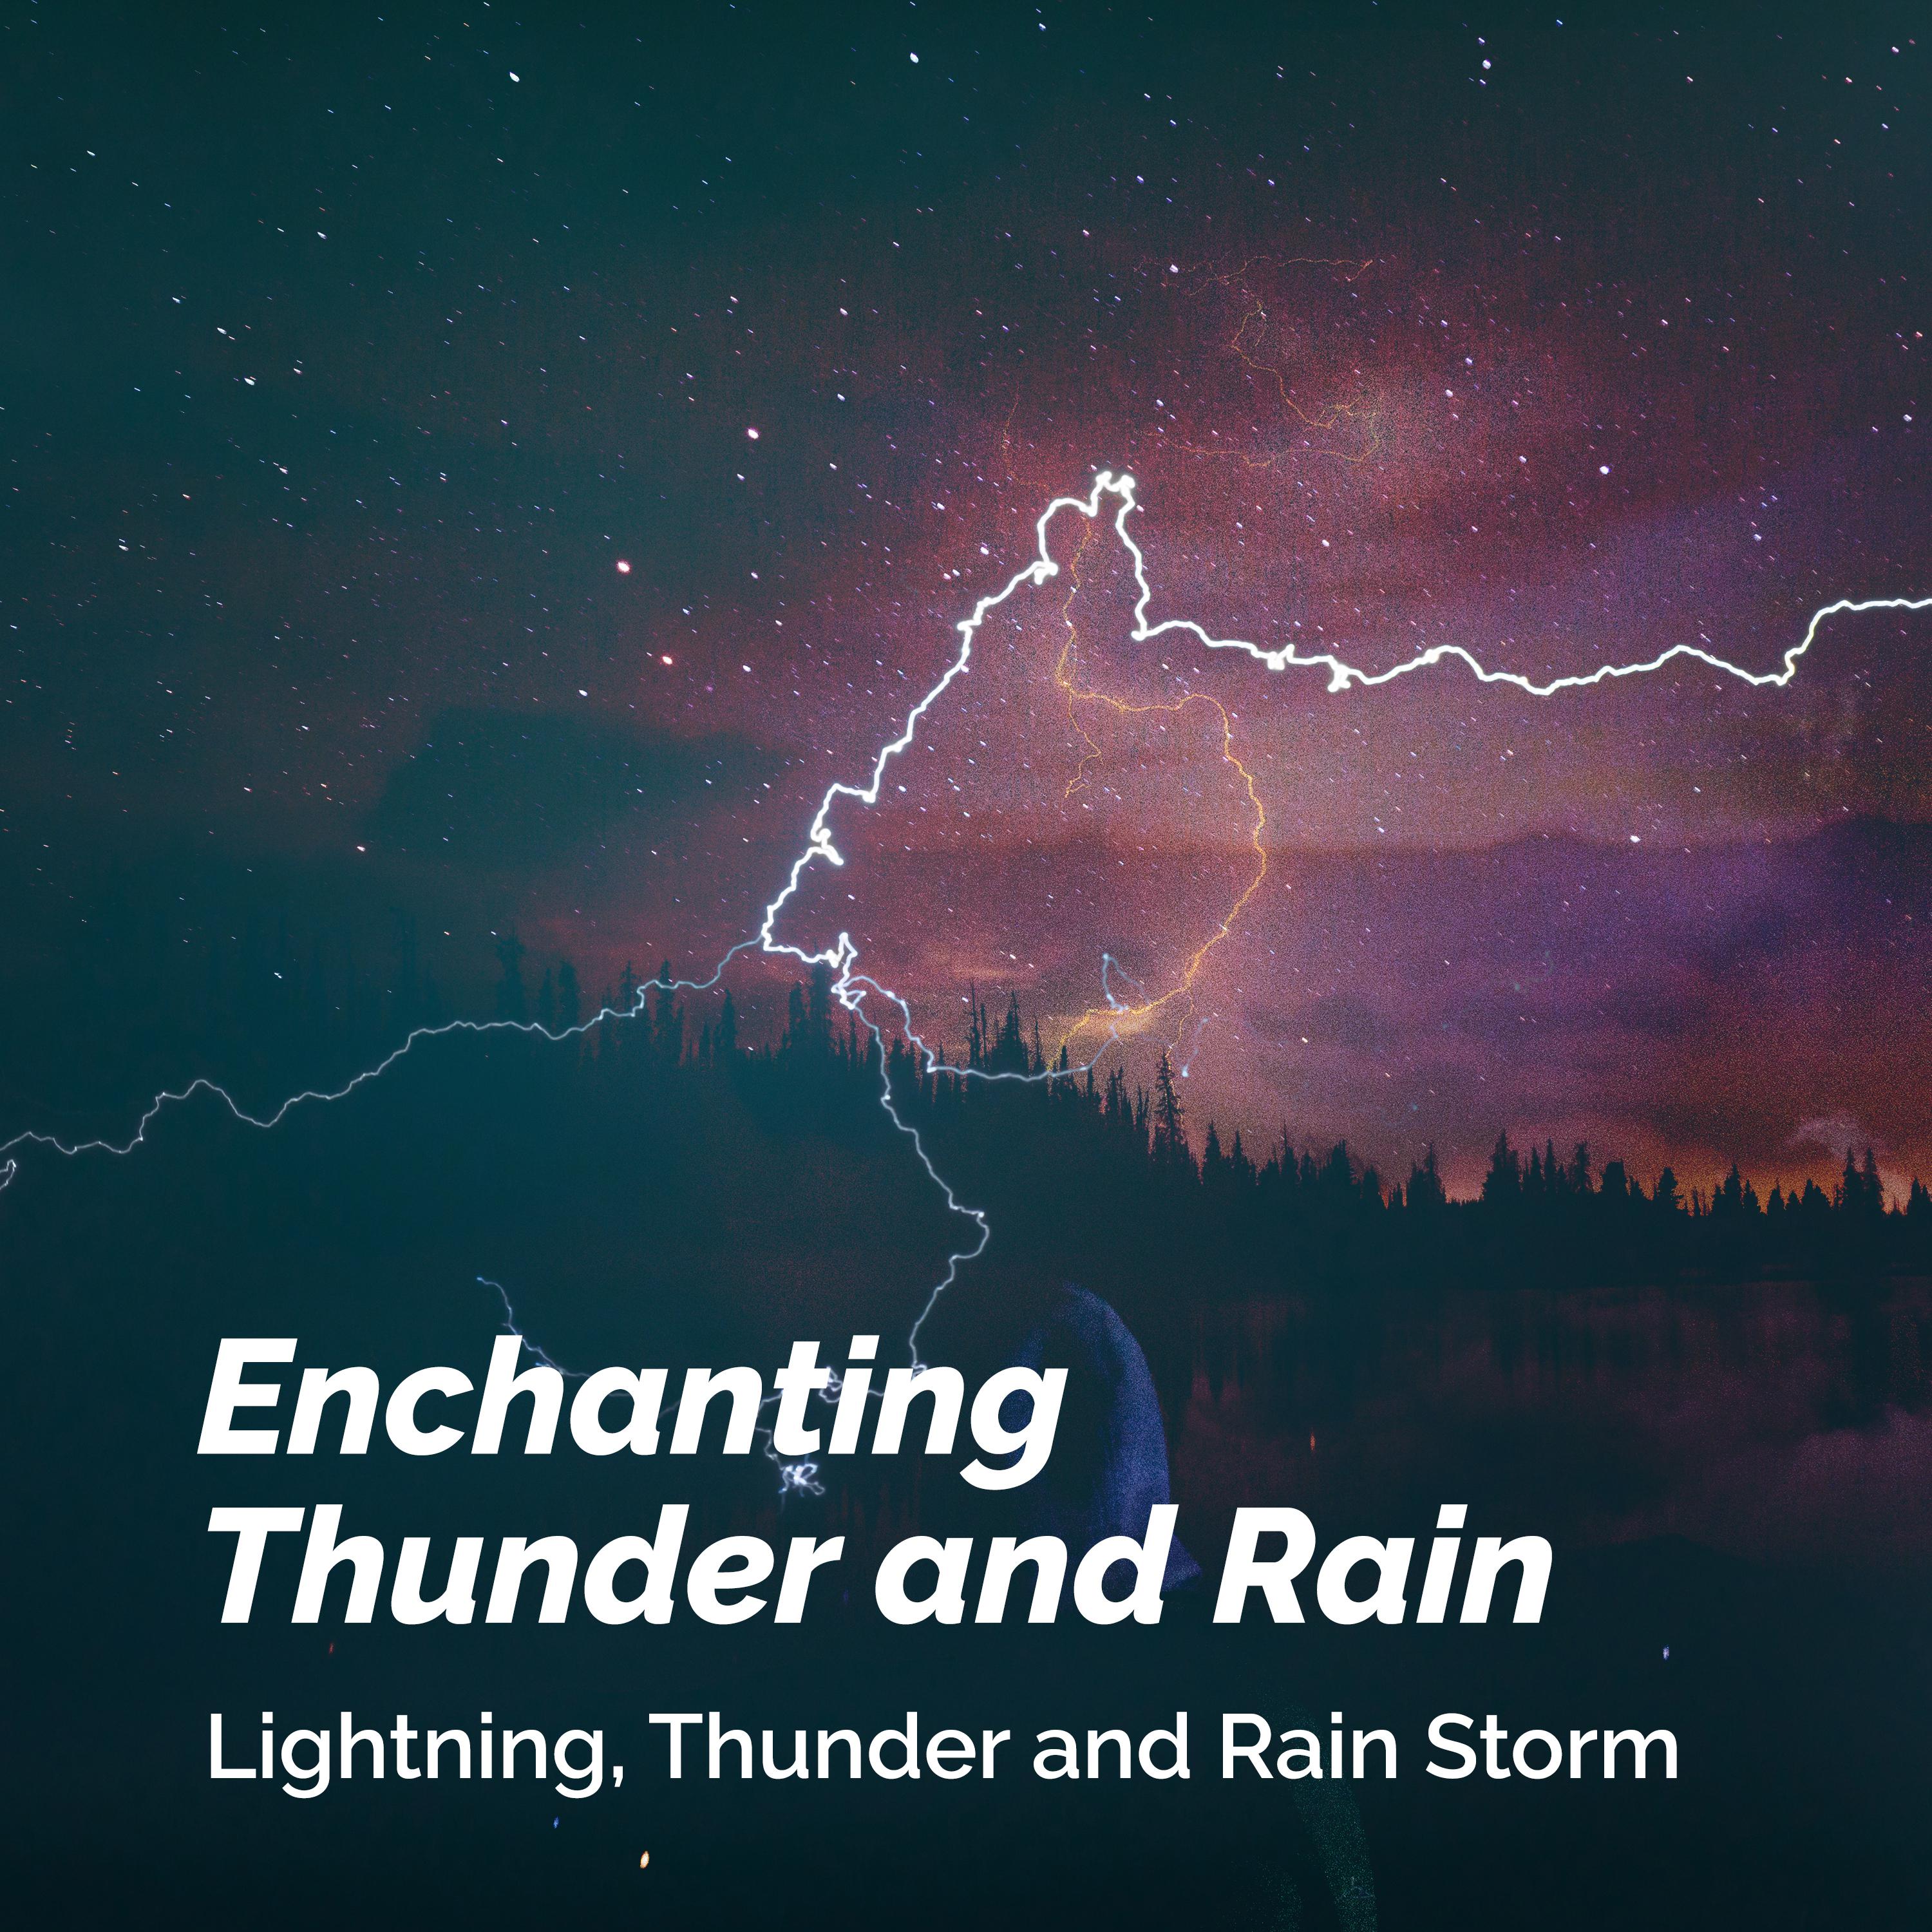 Enchanting Thunder and Rain